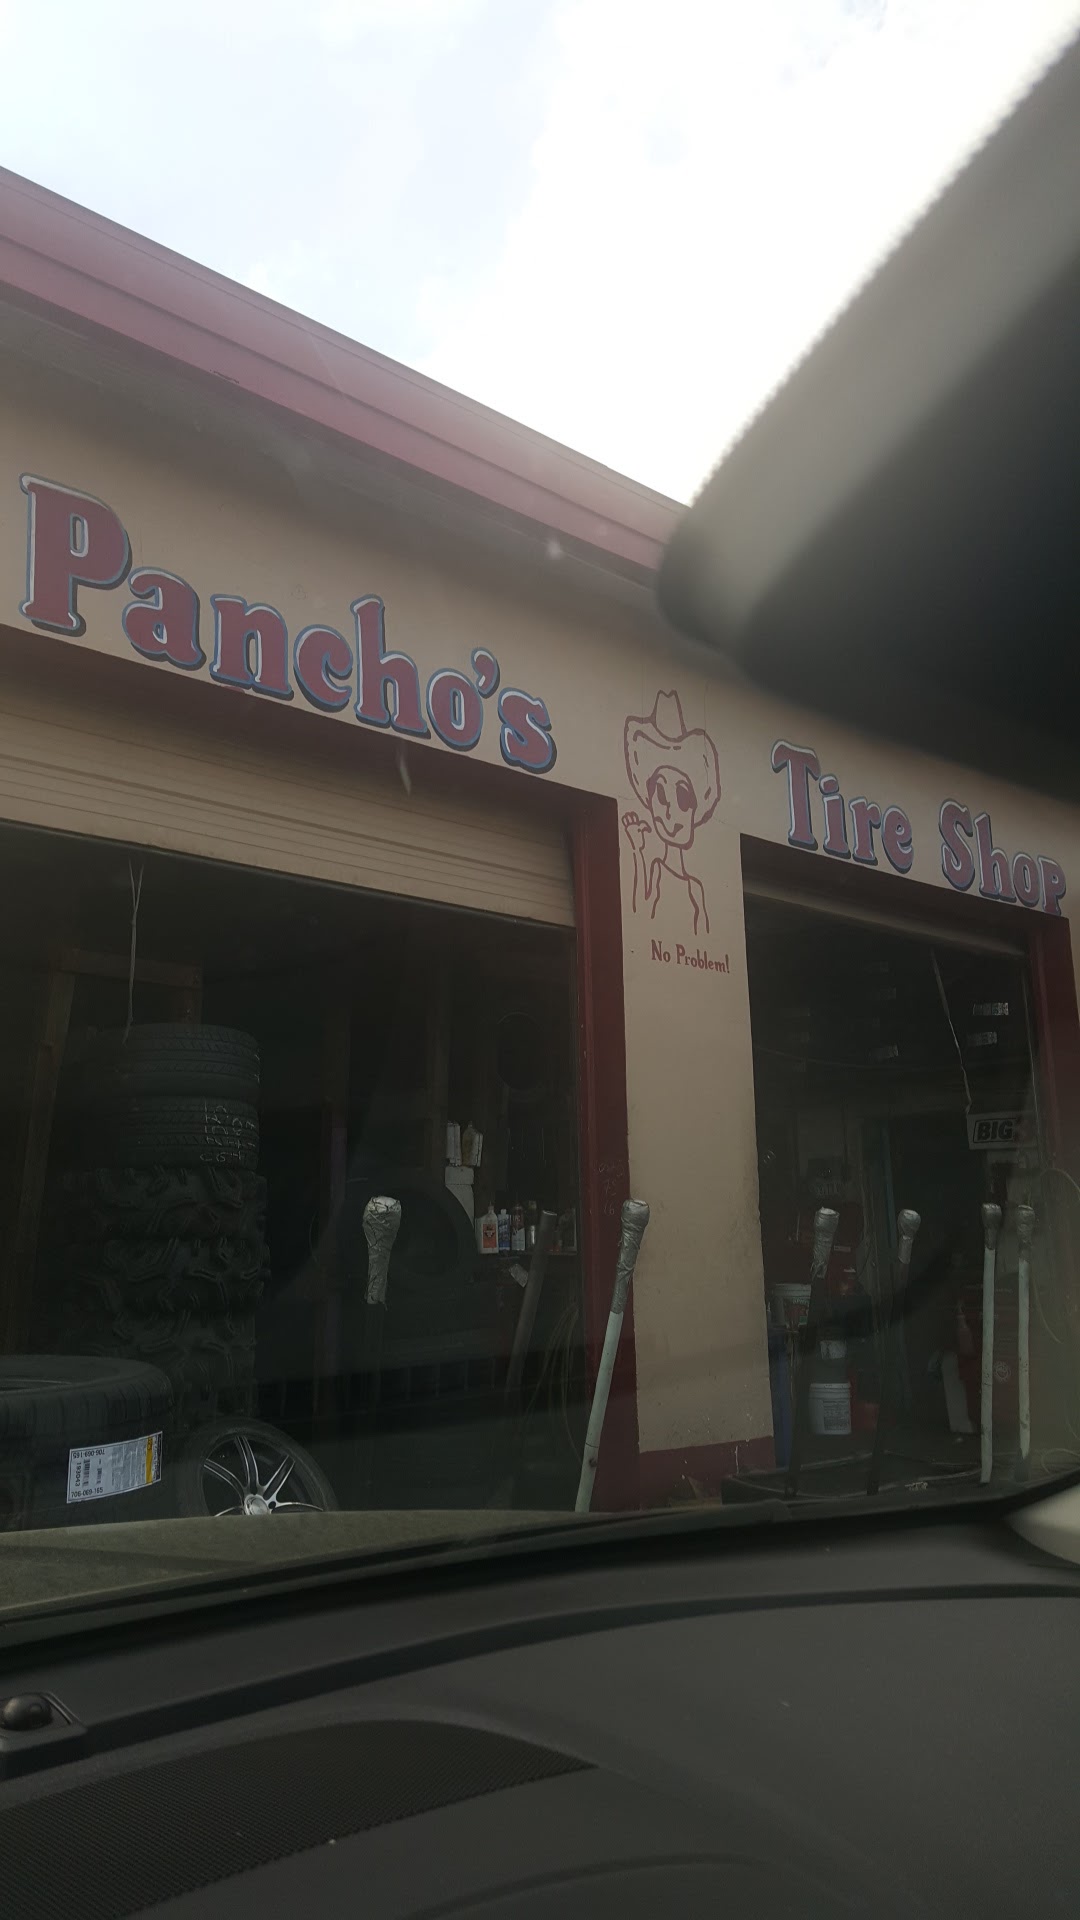 Pancho's Tire Shop